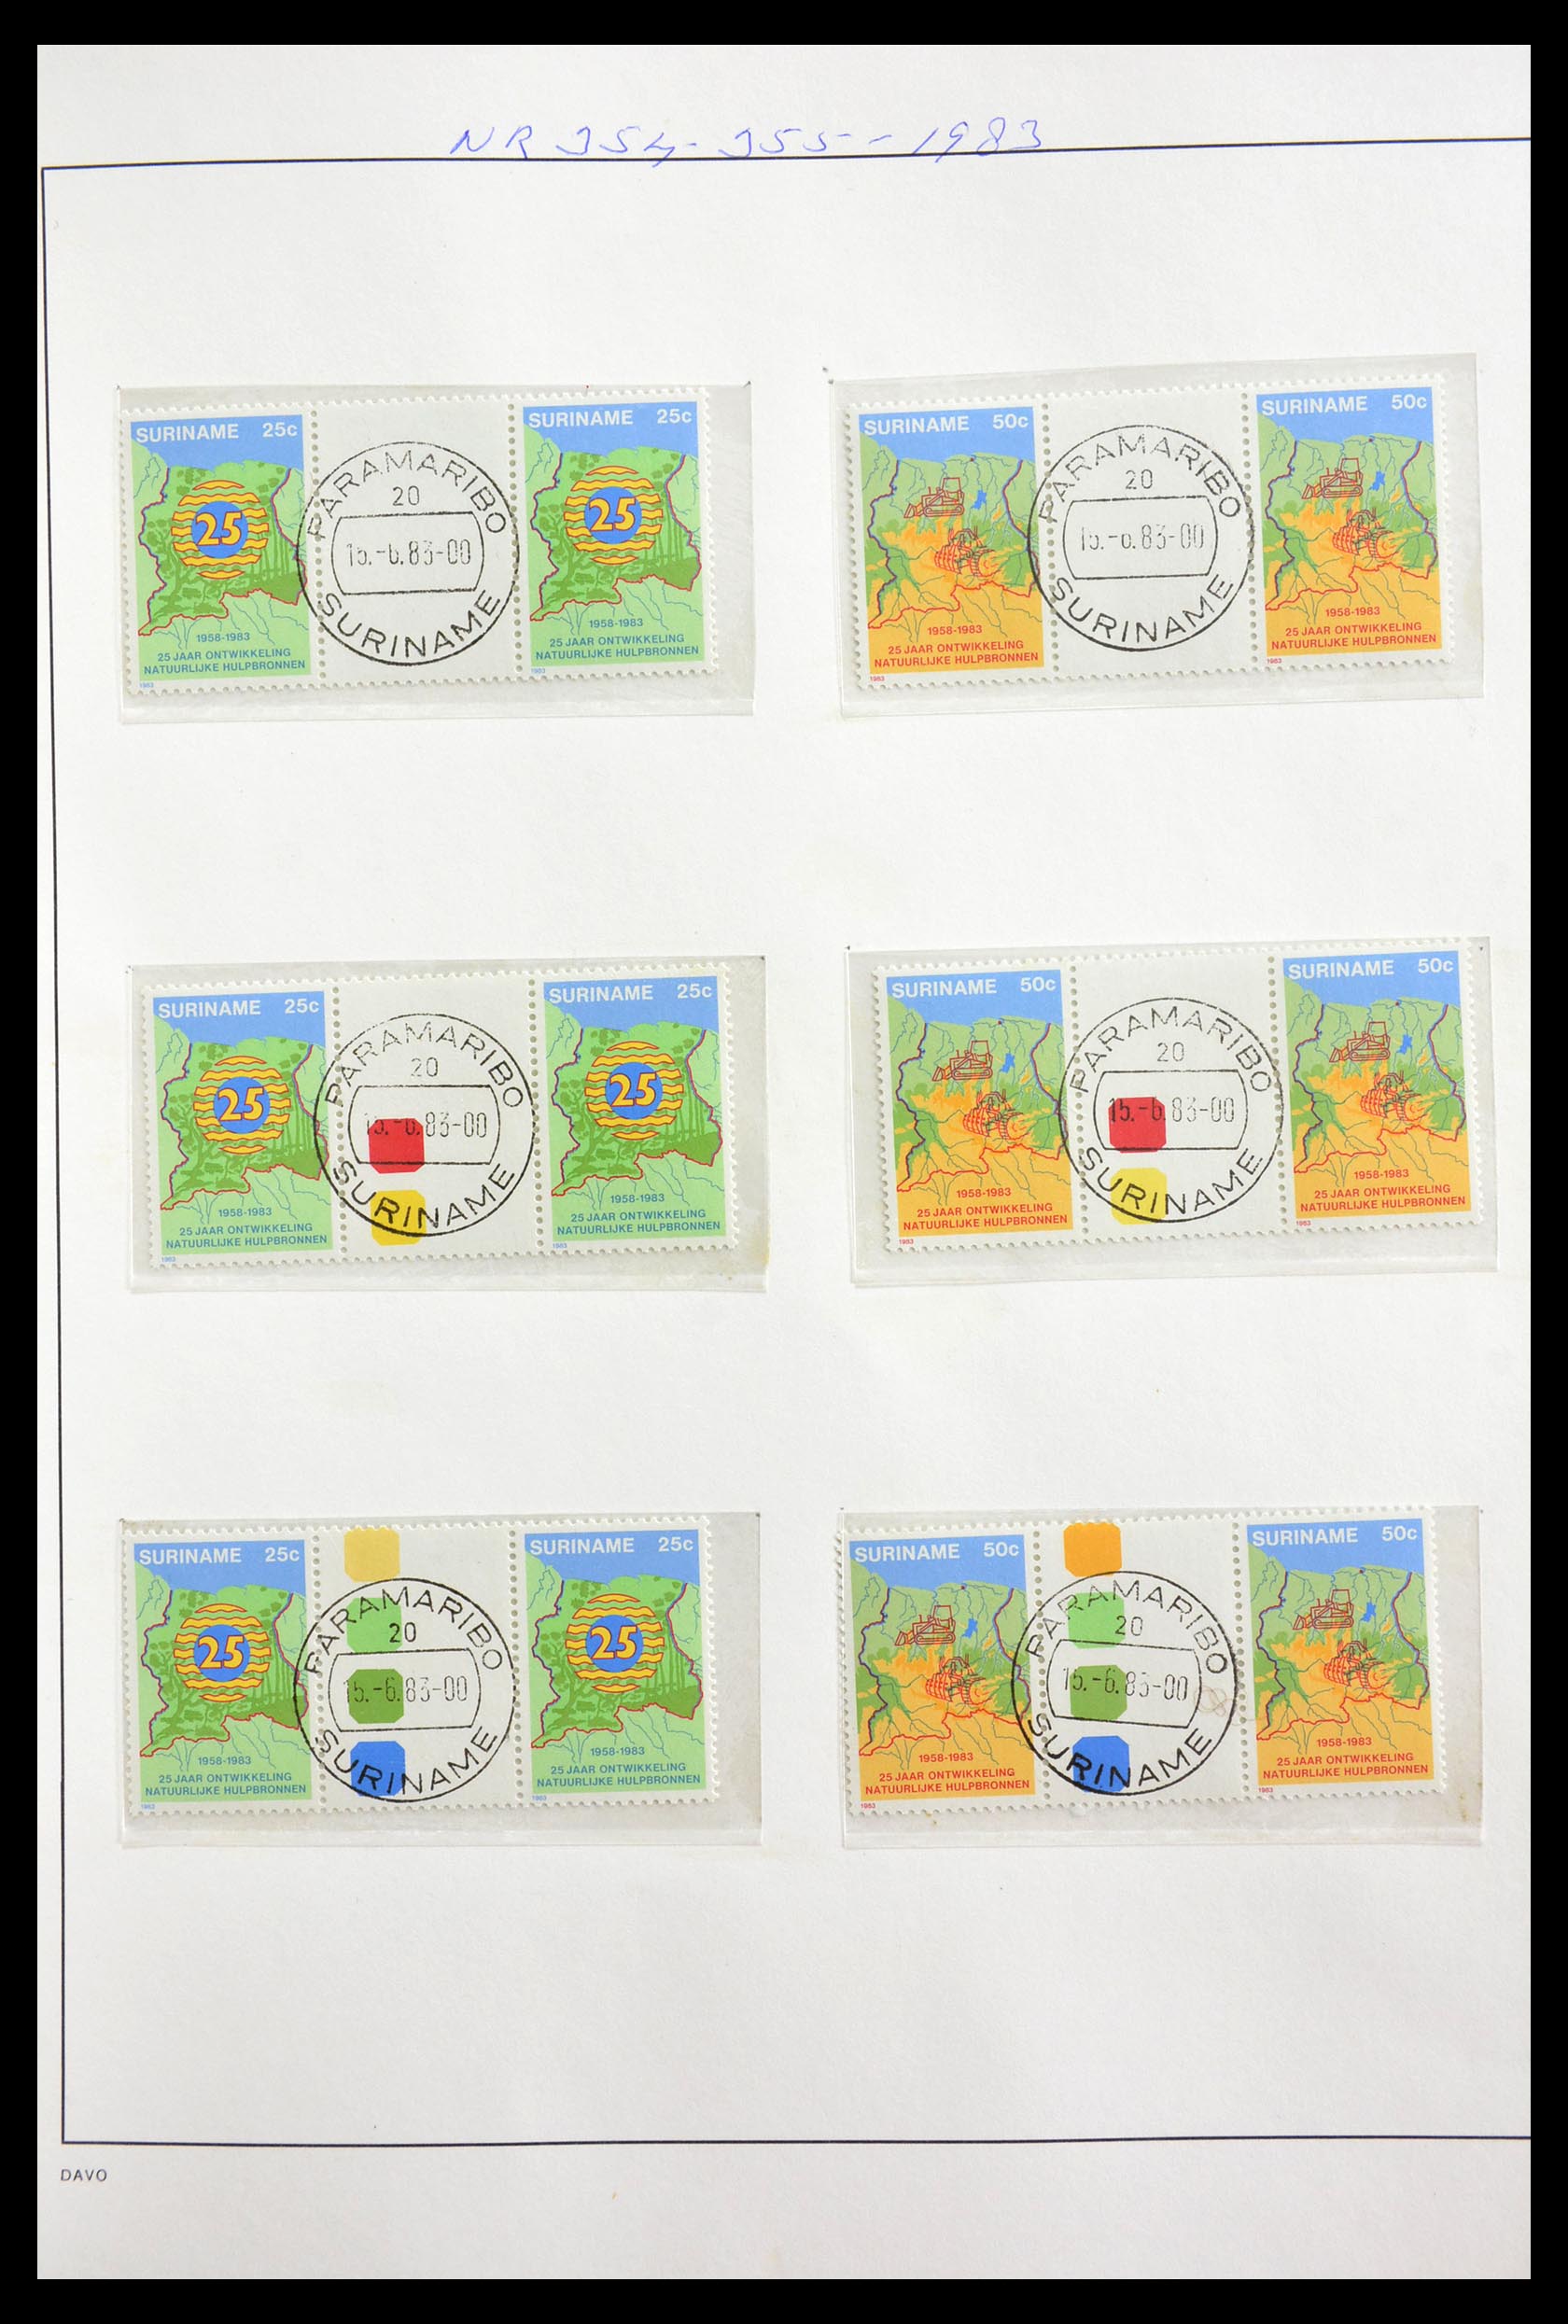 29154 016 - 29154 Suriname brugparen 1977-2003.